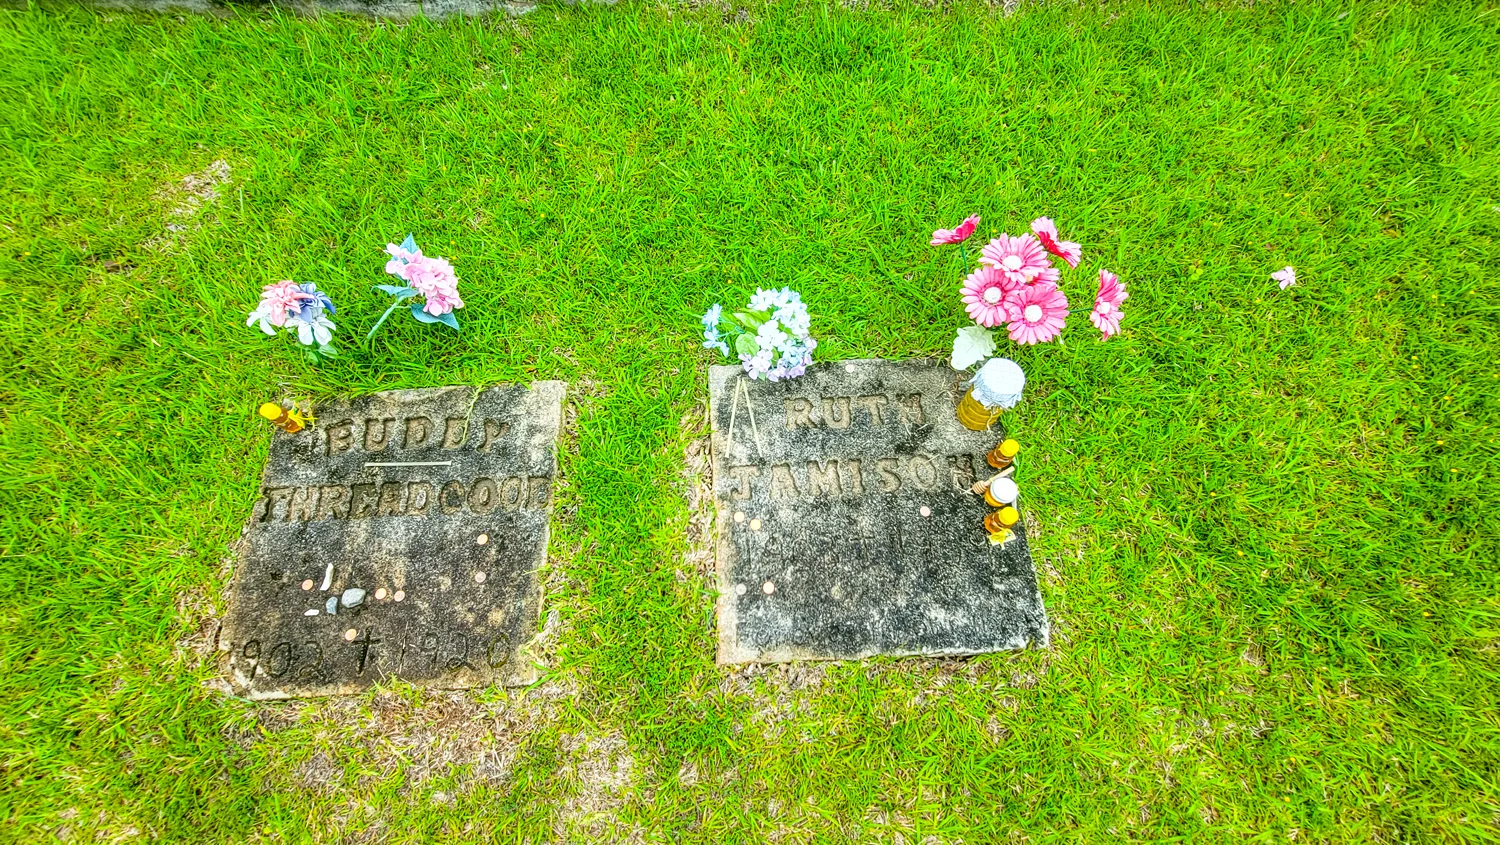 Ruth's Grave Juliette Georgia 